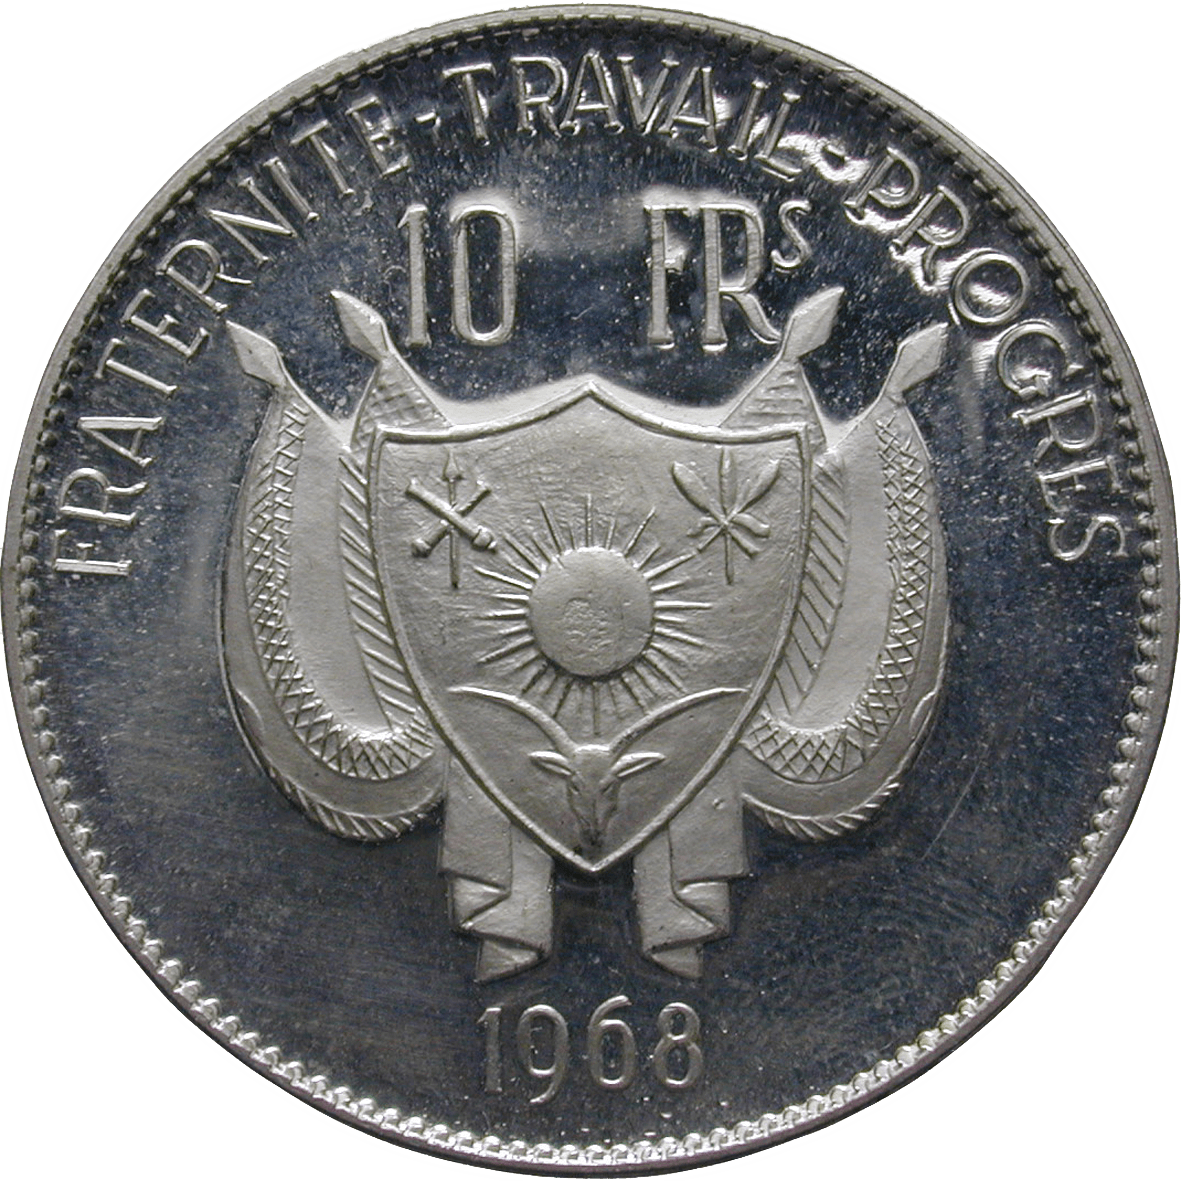 Republic of Niger, 10 Francs 1968 (reverse)